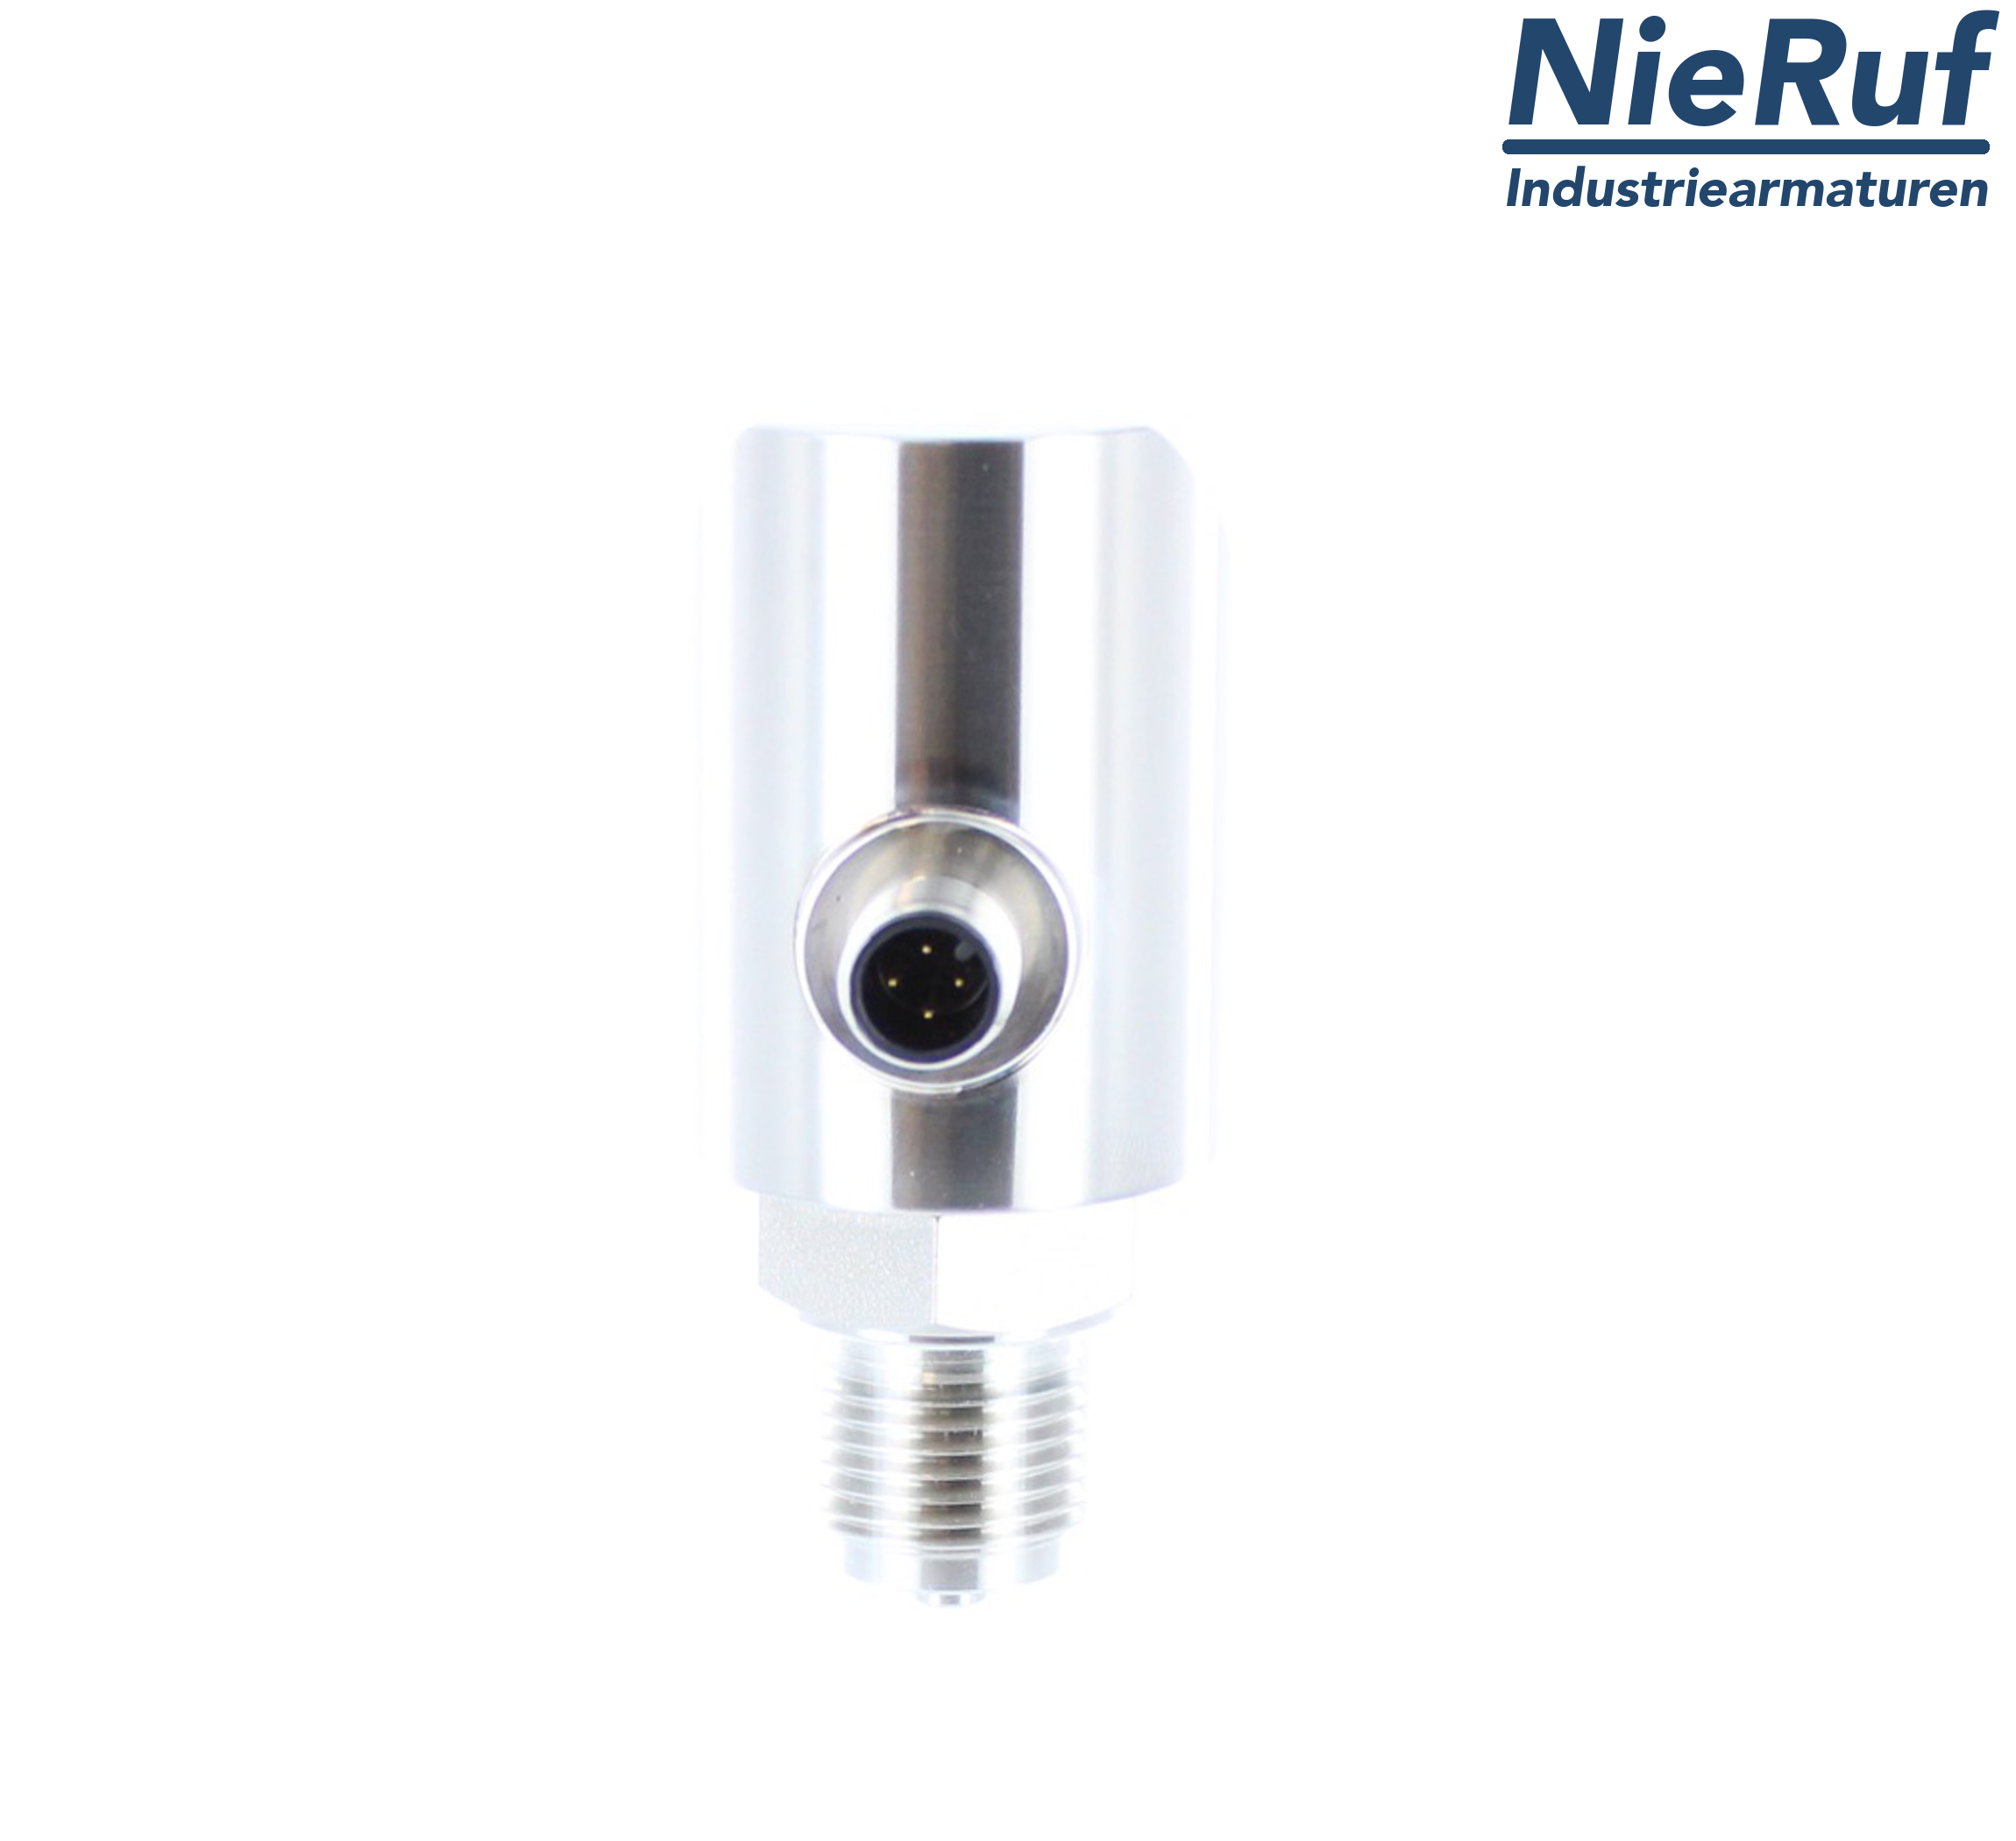 digital pressure sensor G 1/4" B 5-wire: 2xPNP, 1x4 - 20mA FPM 0,0 - 40,0 bar